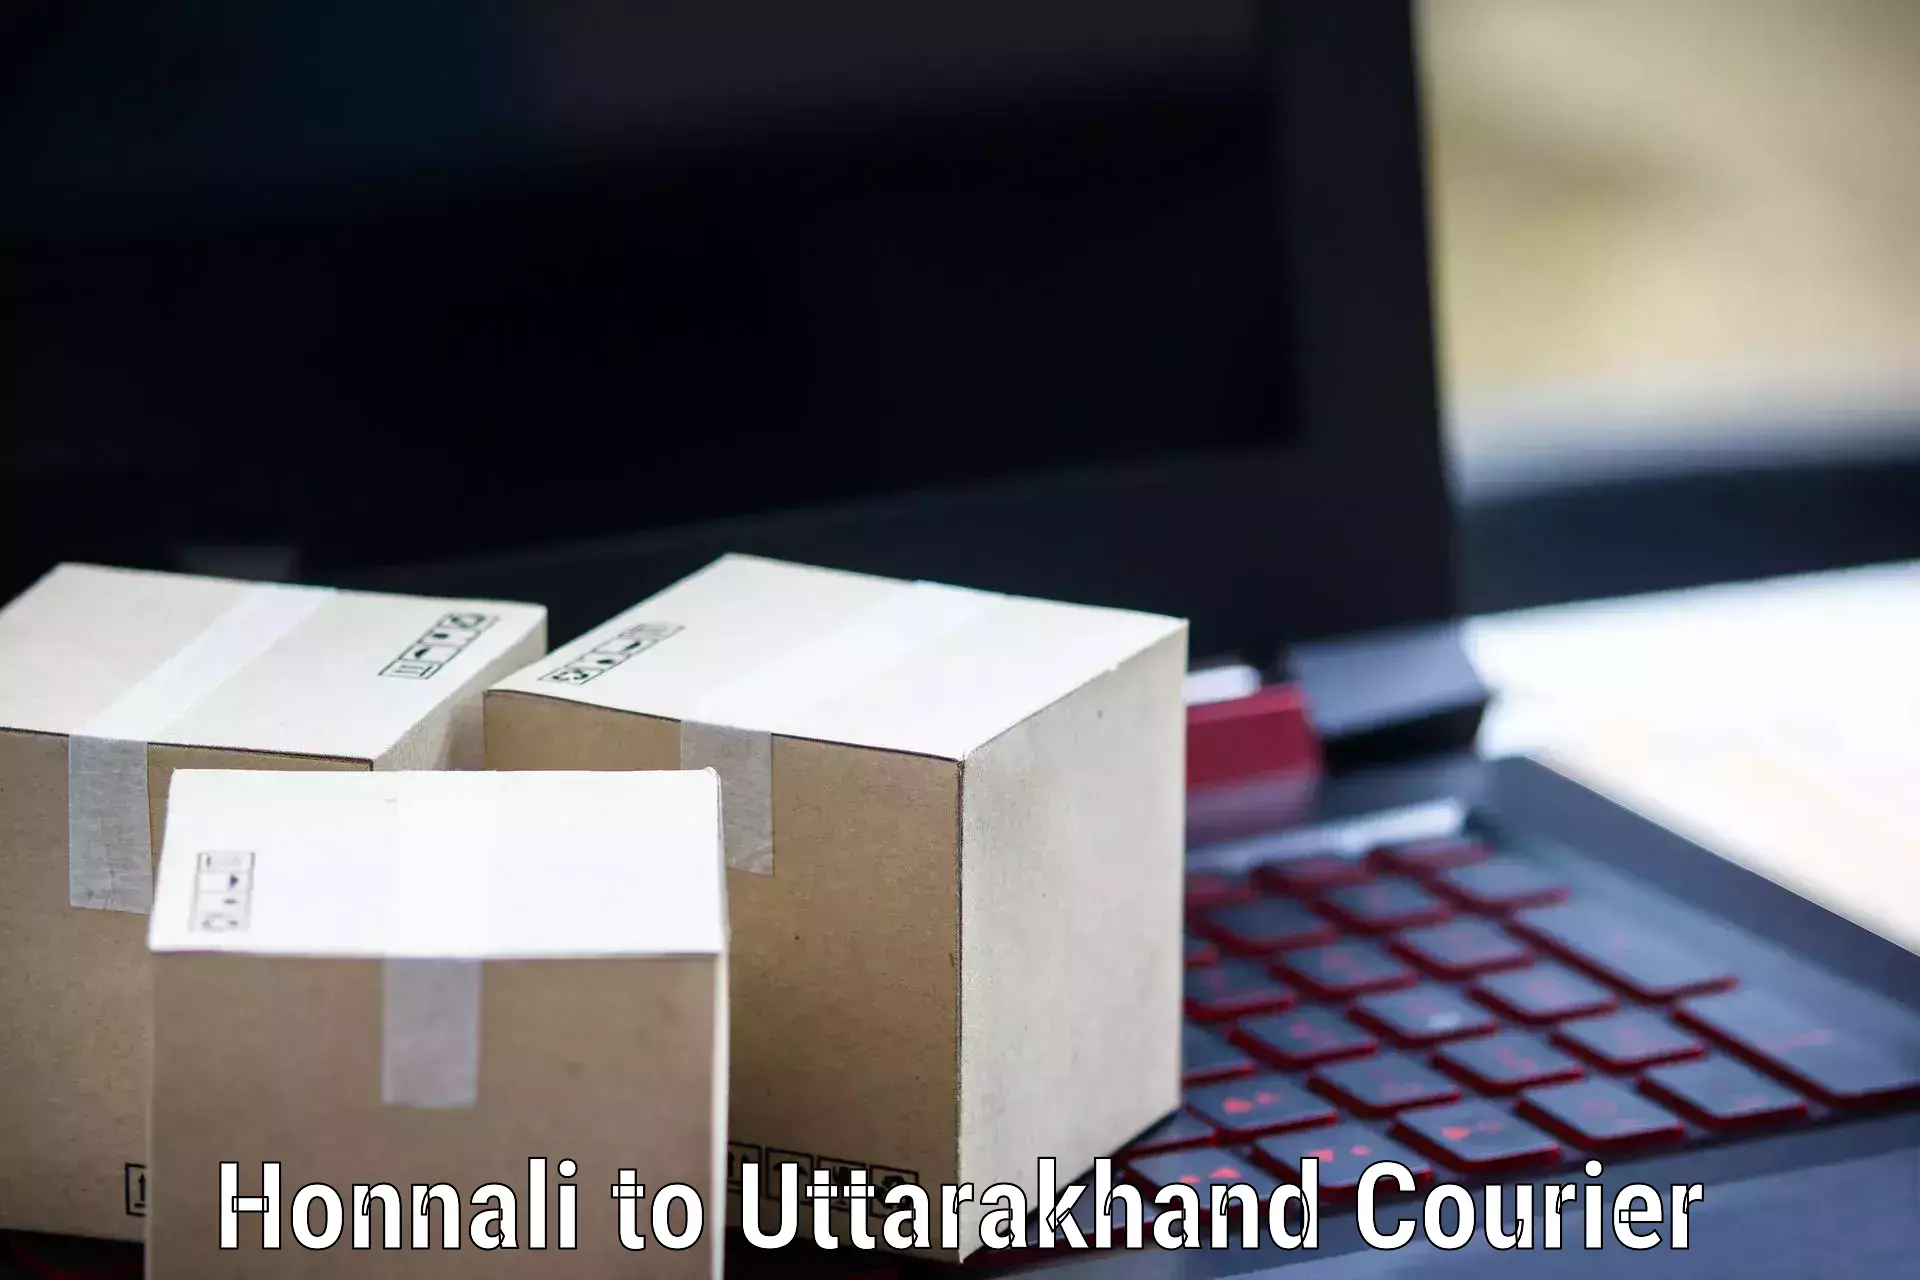 Doorstep delivery service Honnali to IIT Roorkee